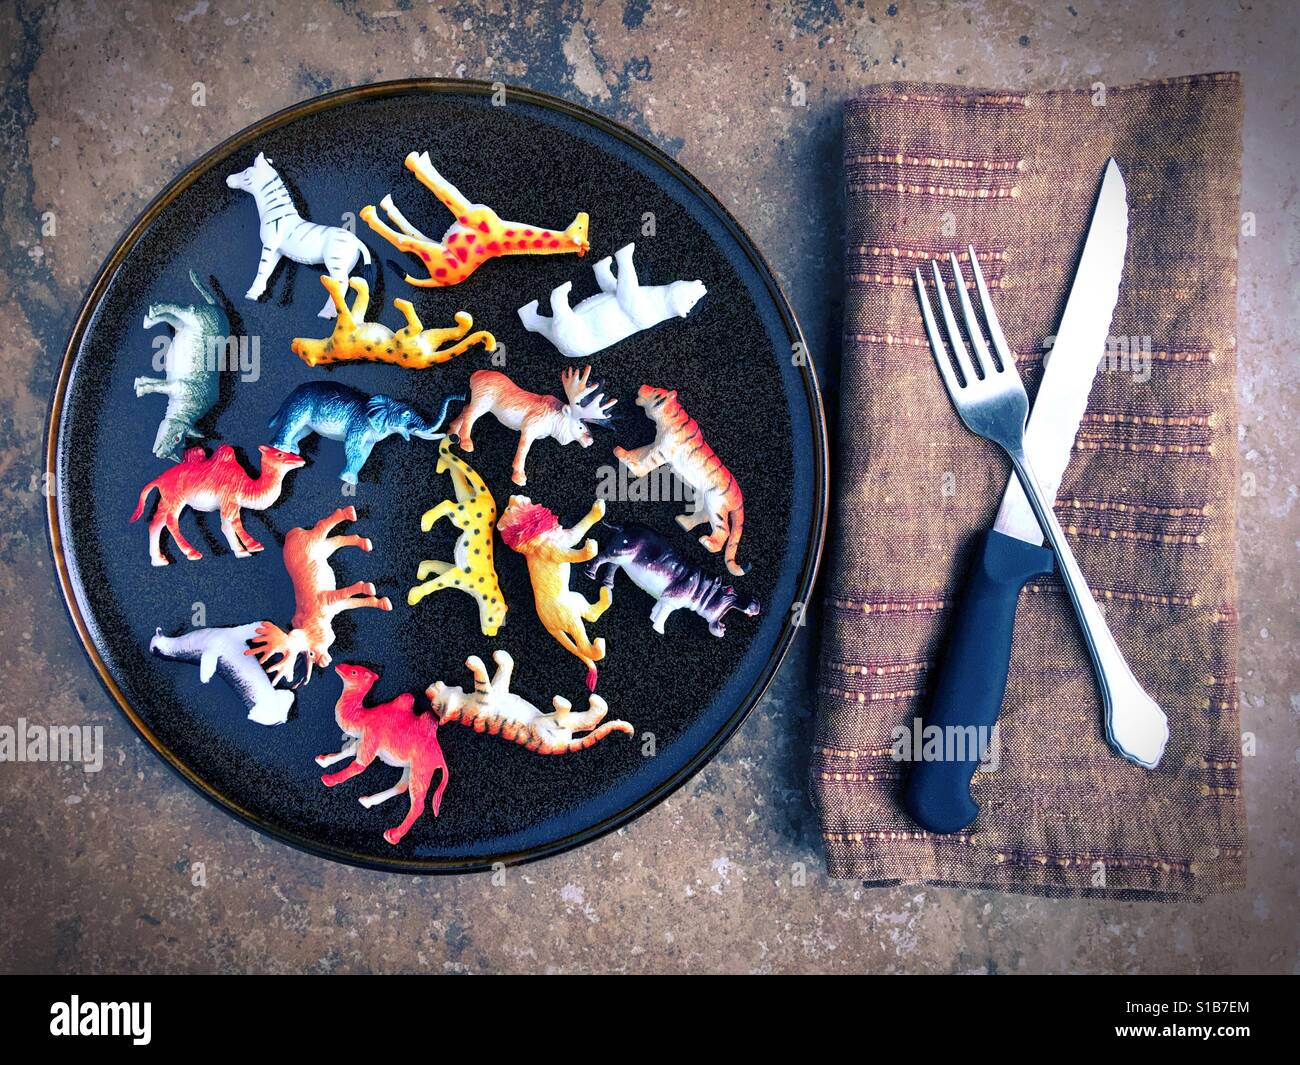 Kunststoff-Spielzeugtiere auf einem Teller neben Messer und Gabel. Stockfoto